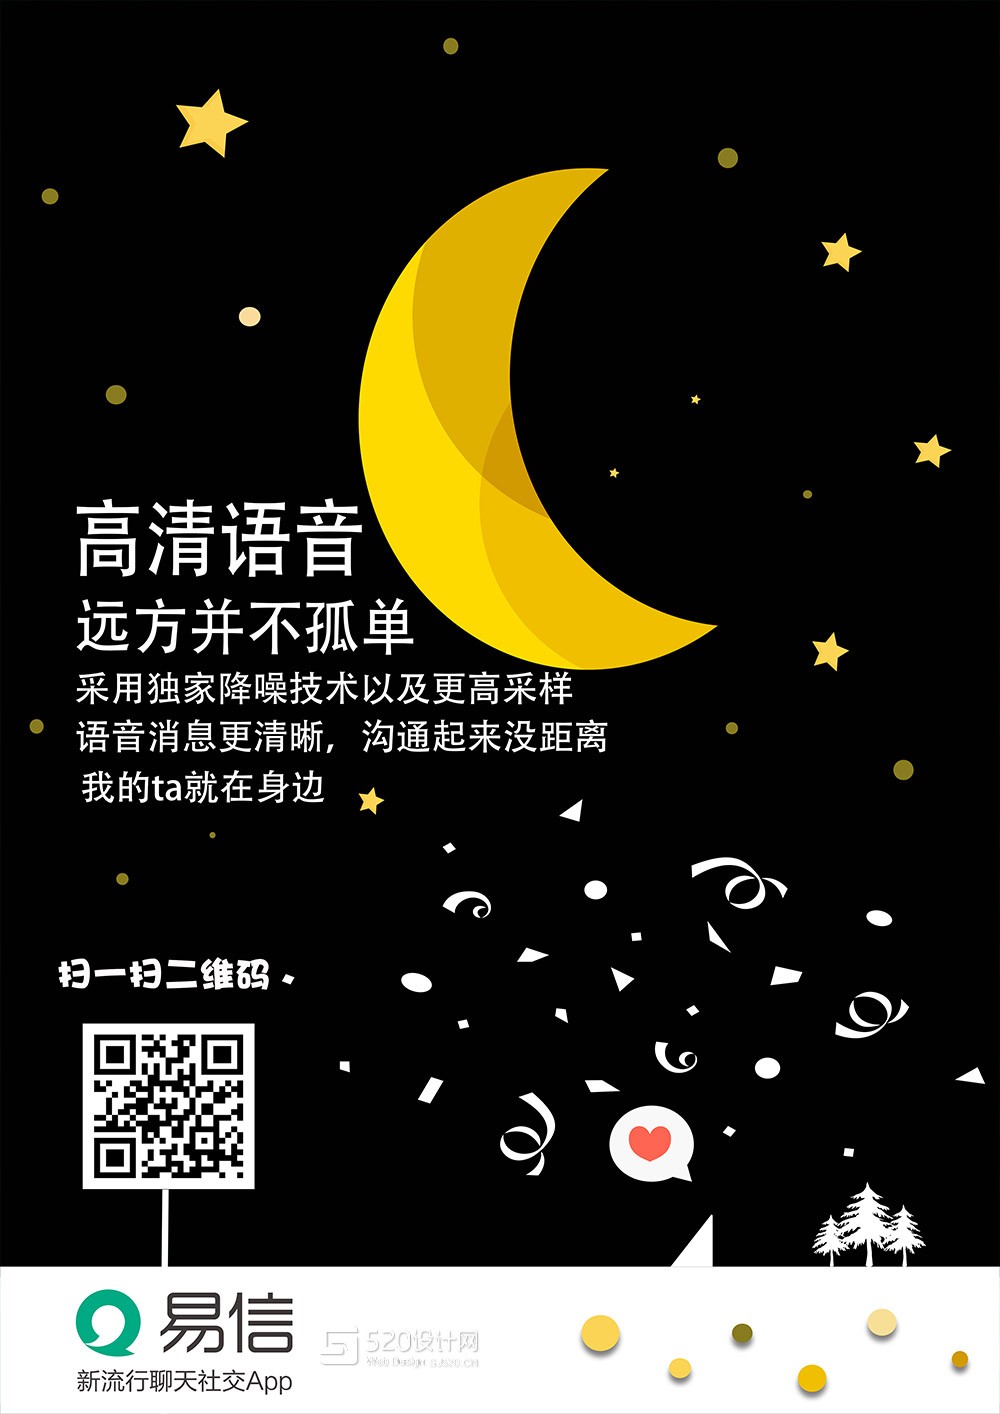 大广赛易信社交APP海报设计